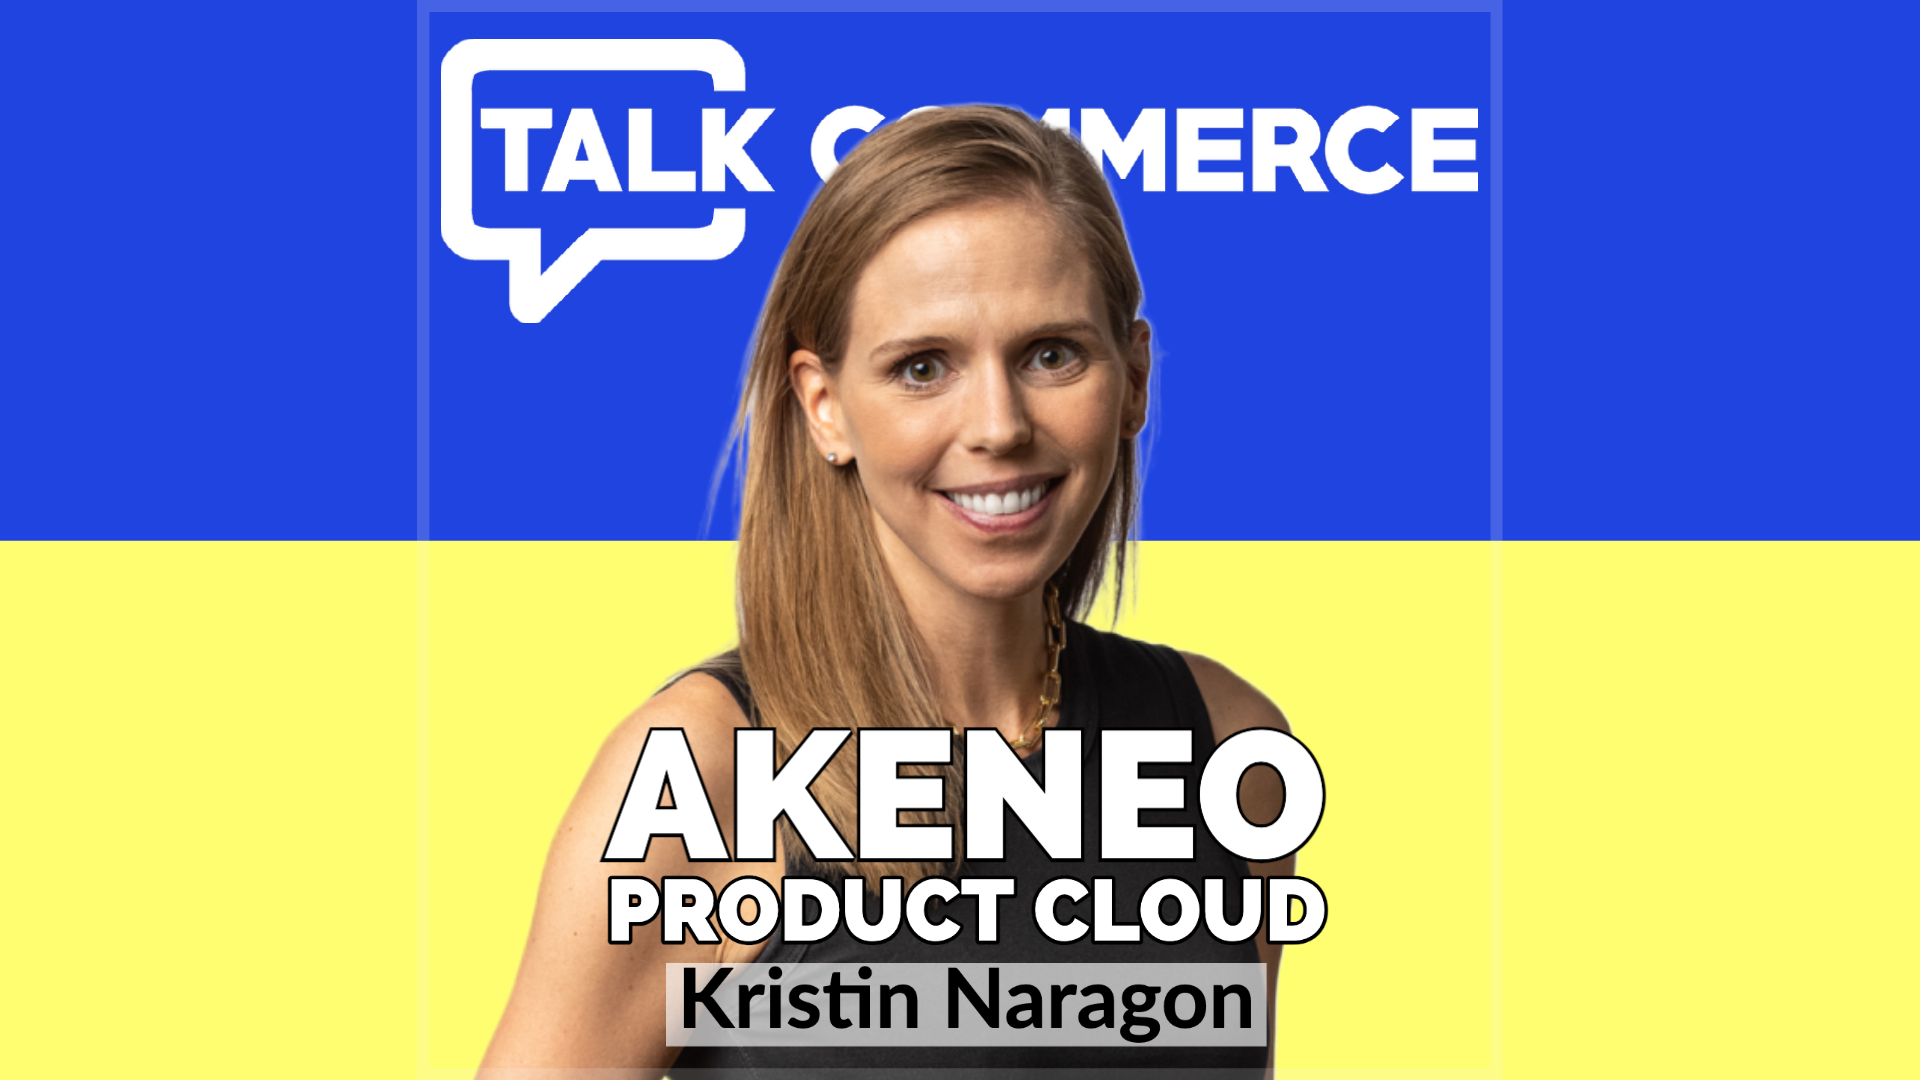 Talk-Commerce Kristin Naragon